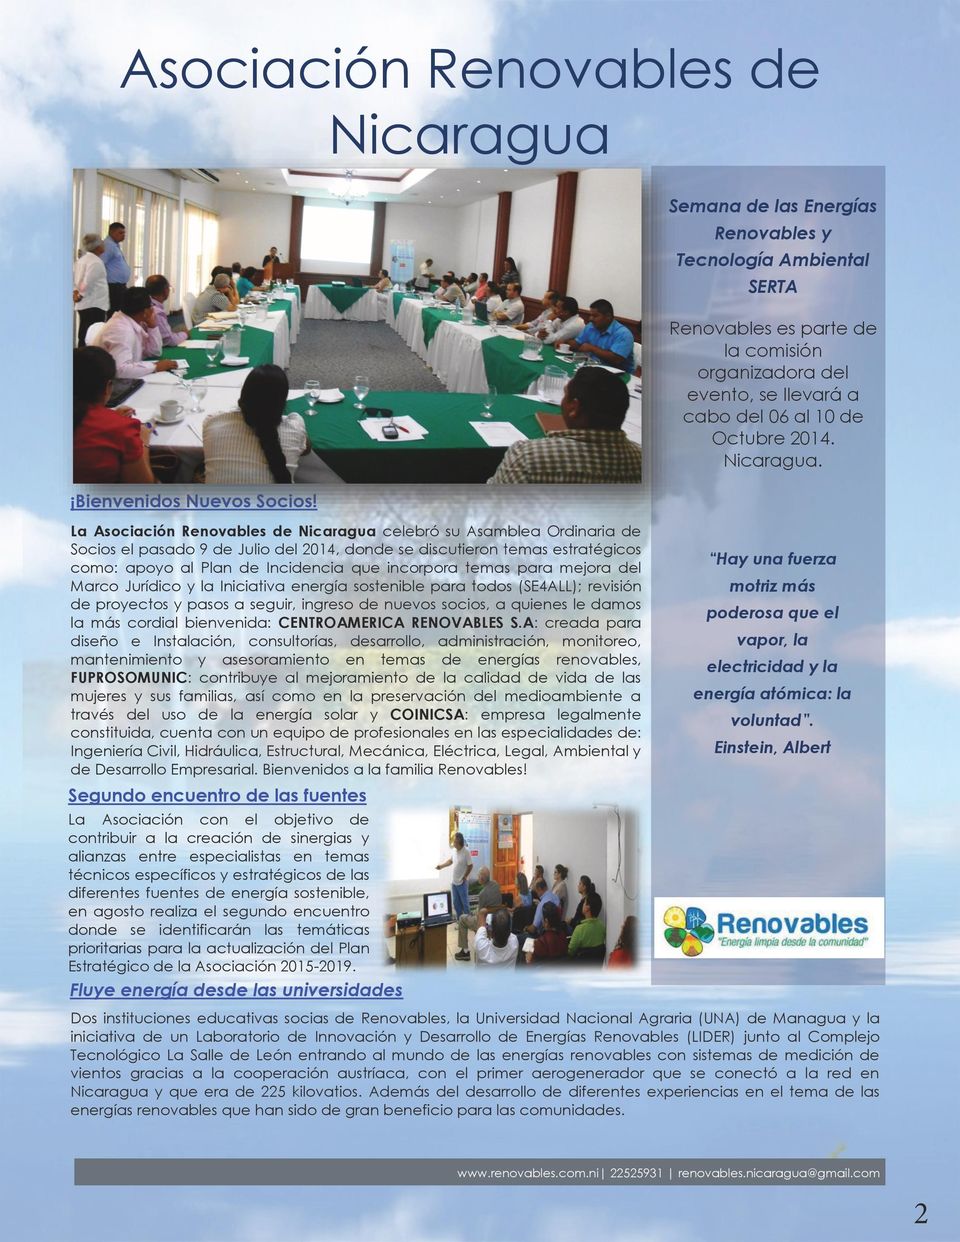 La Asociación Renovables de Nicaragua celebró su Asamblea Ordinaria de Socios el pasado 9 de Julio del 2014, donde se discutieron temas estratégicos como: apoyo al Plan de Incidencia que incorpora